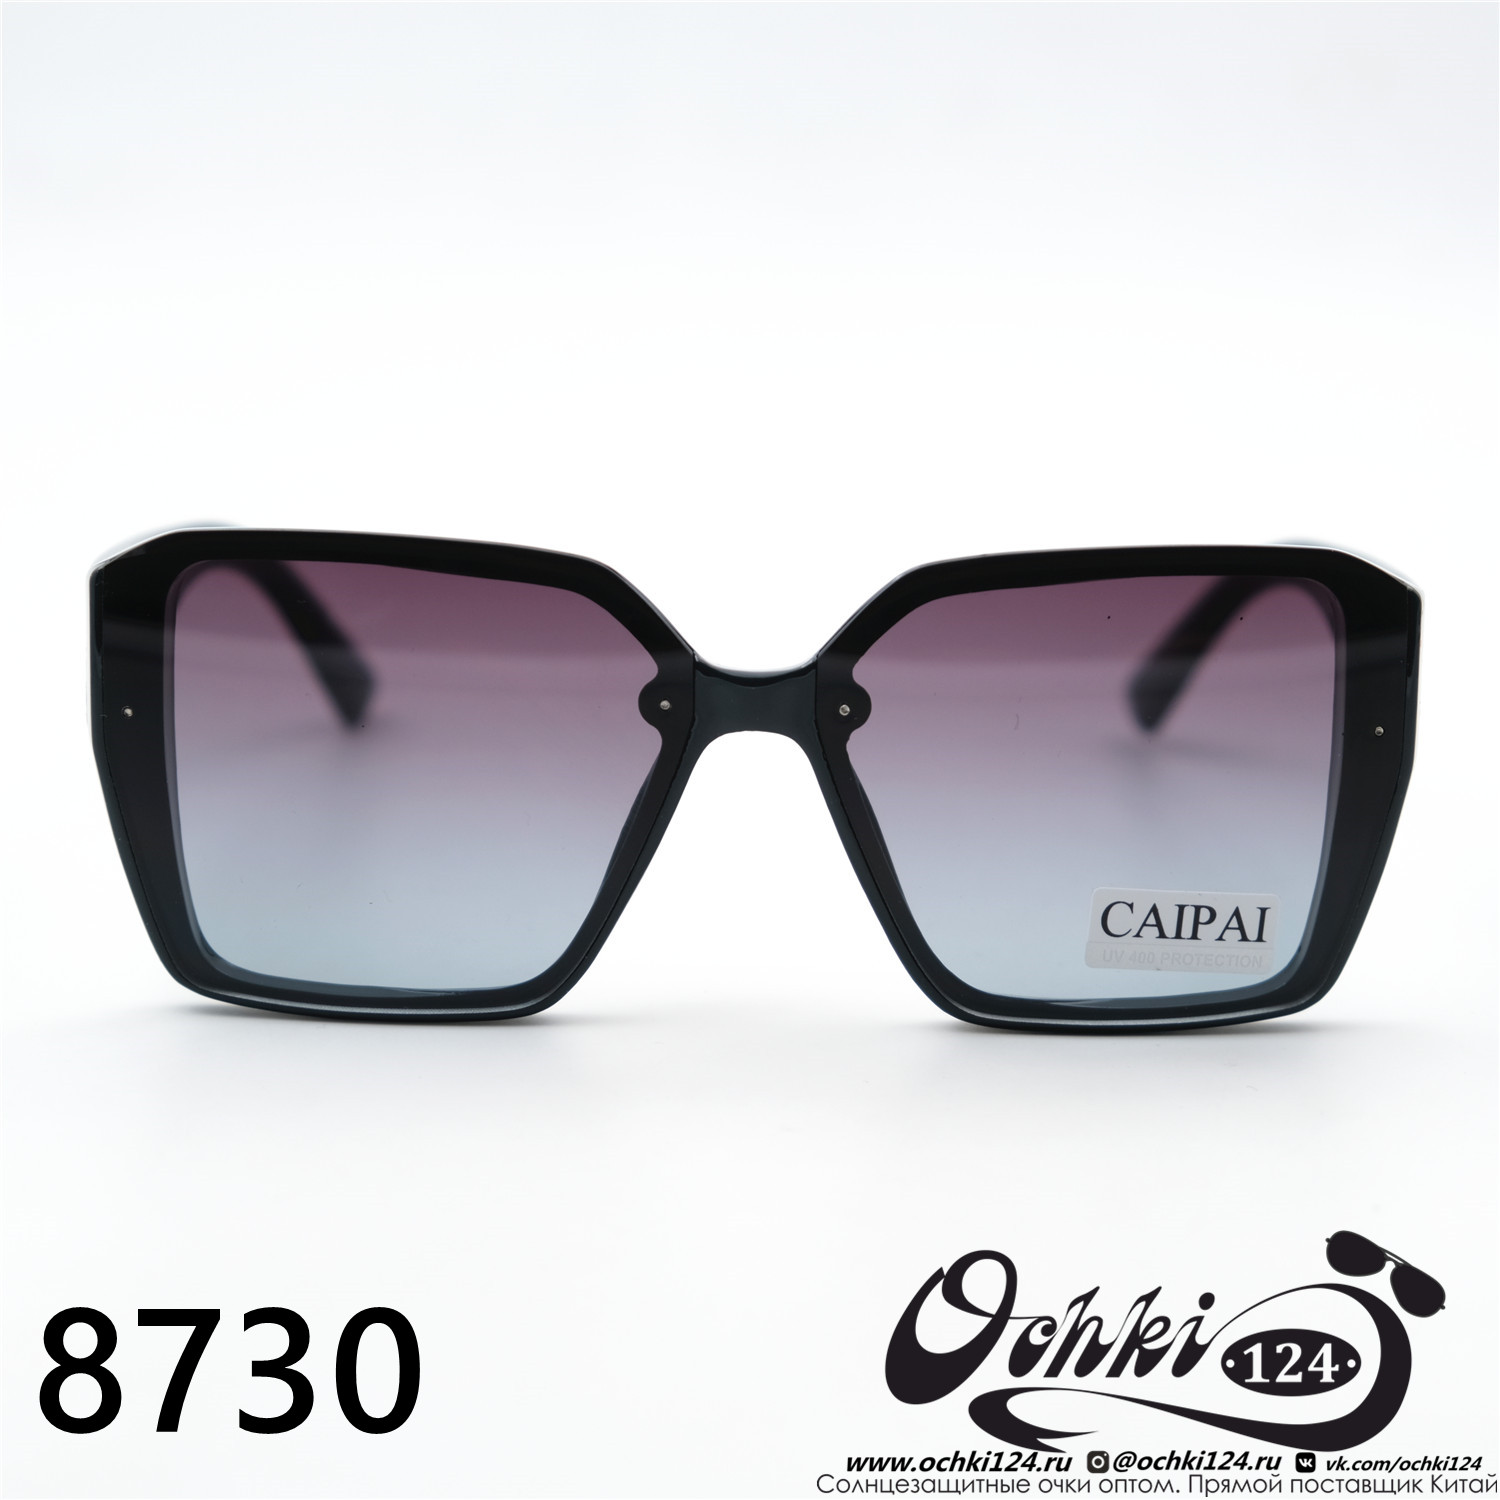  Солнцезащитные очки картинка 2023 Женские Геометрические формы Caipai 8730-C5 